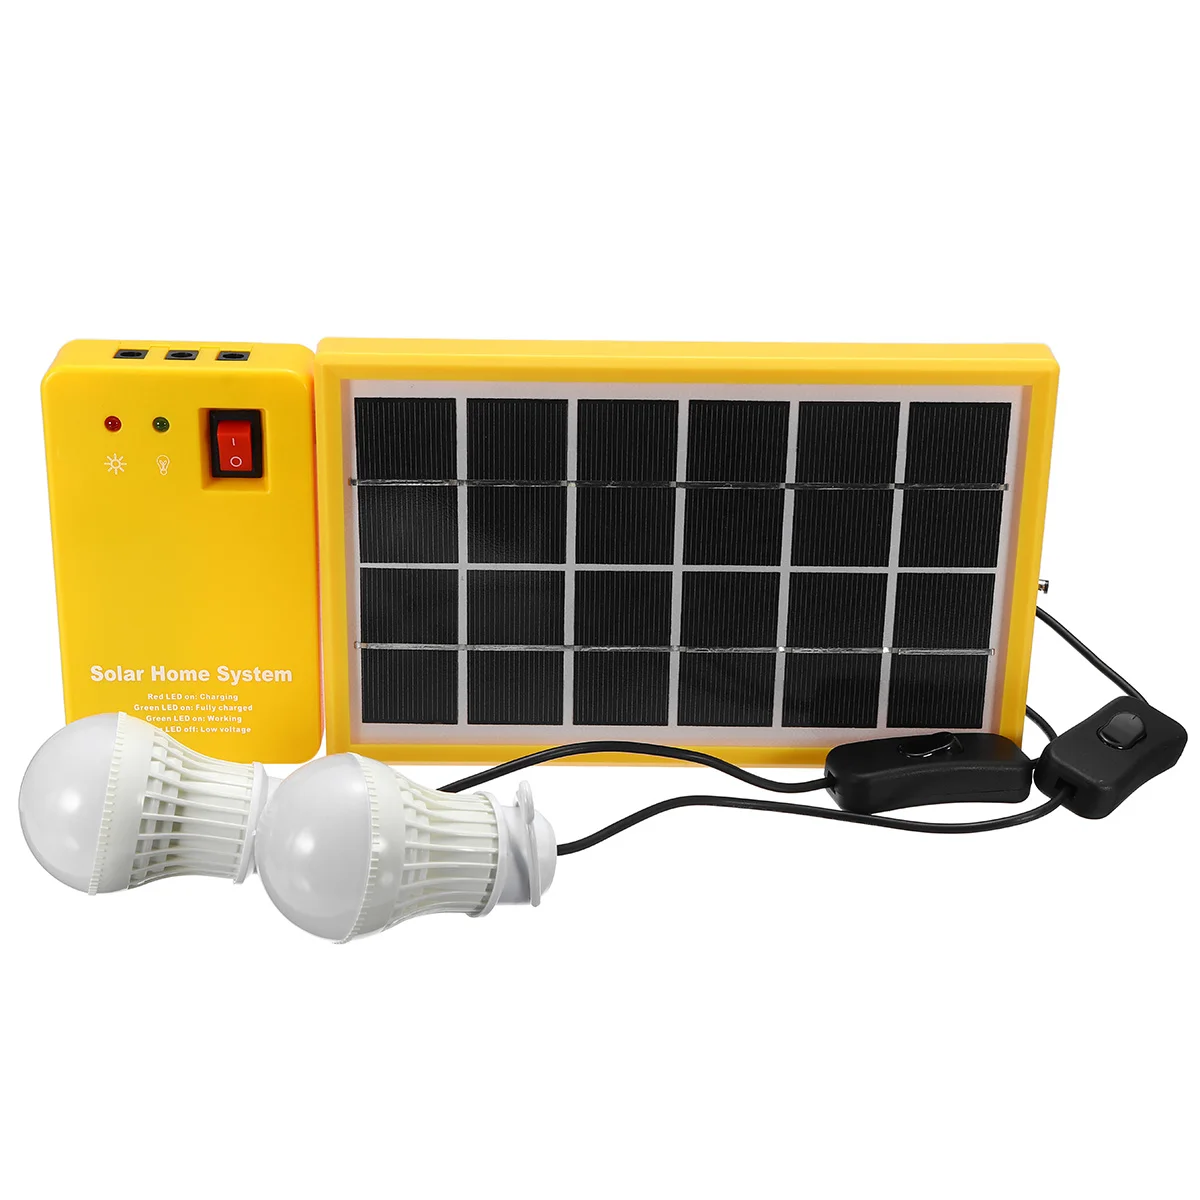 5V Солнечный Мощность Панель генераторной установки USB Зарядное устройство дома Системы с 3 светодиодный лампы светильник в помещении/на открытом воздухе светильник ing над разрядкой для защиты